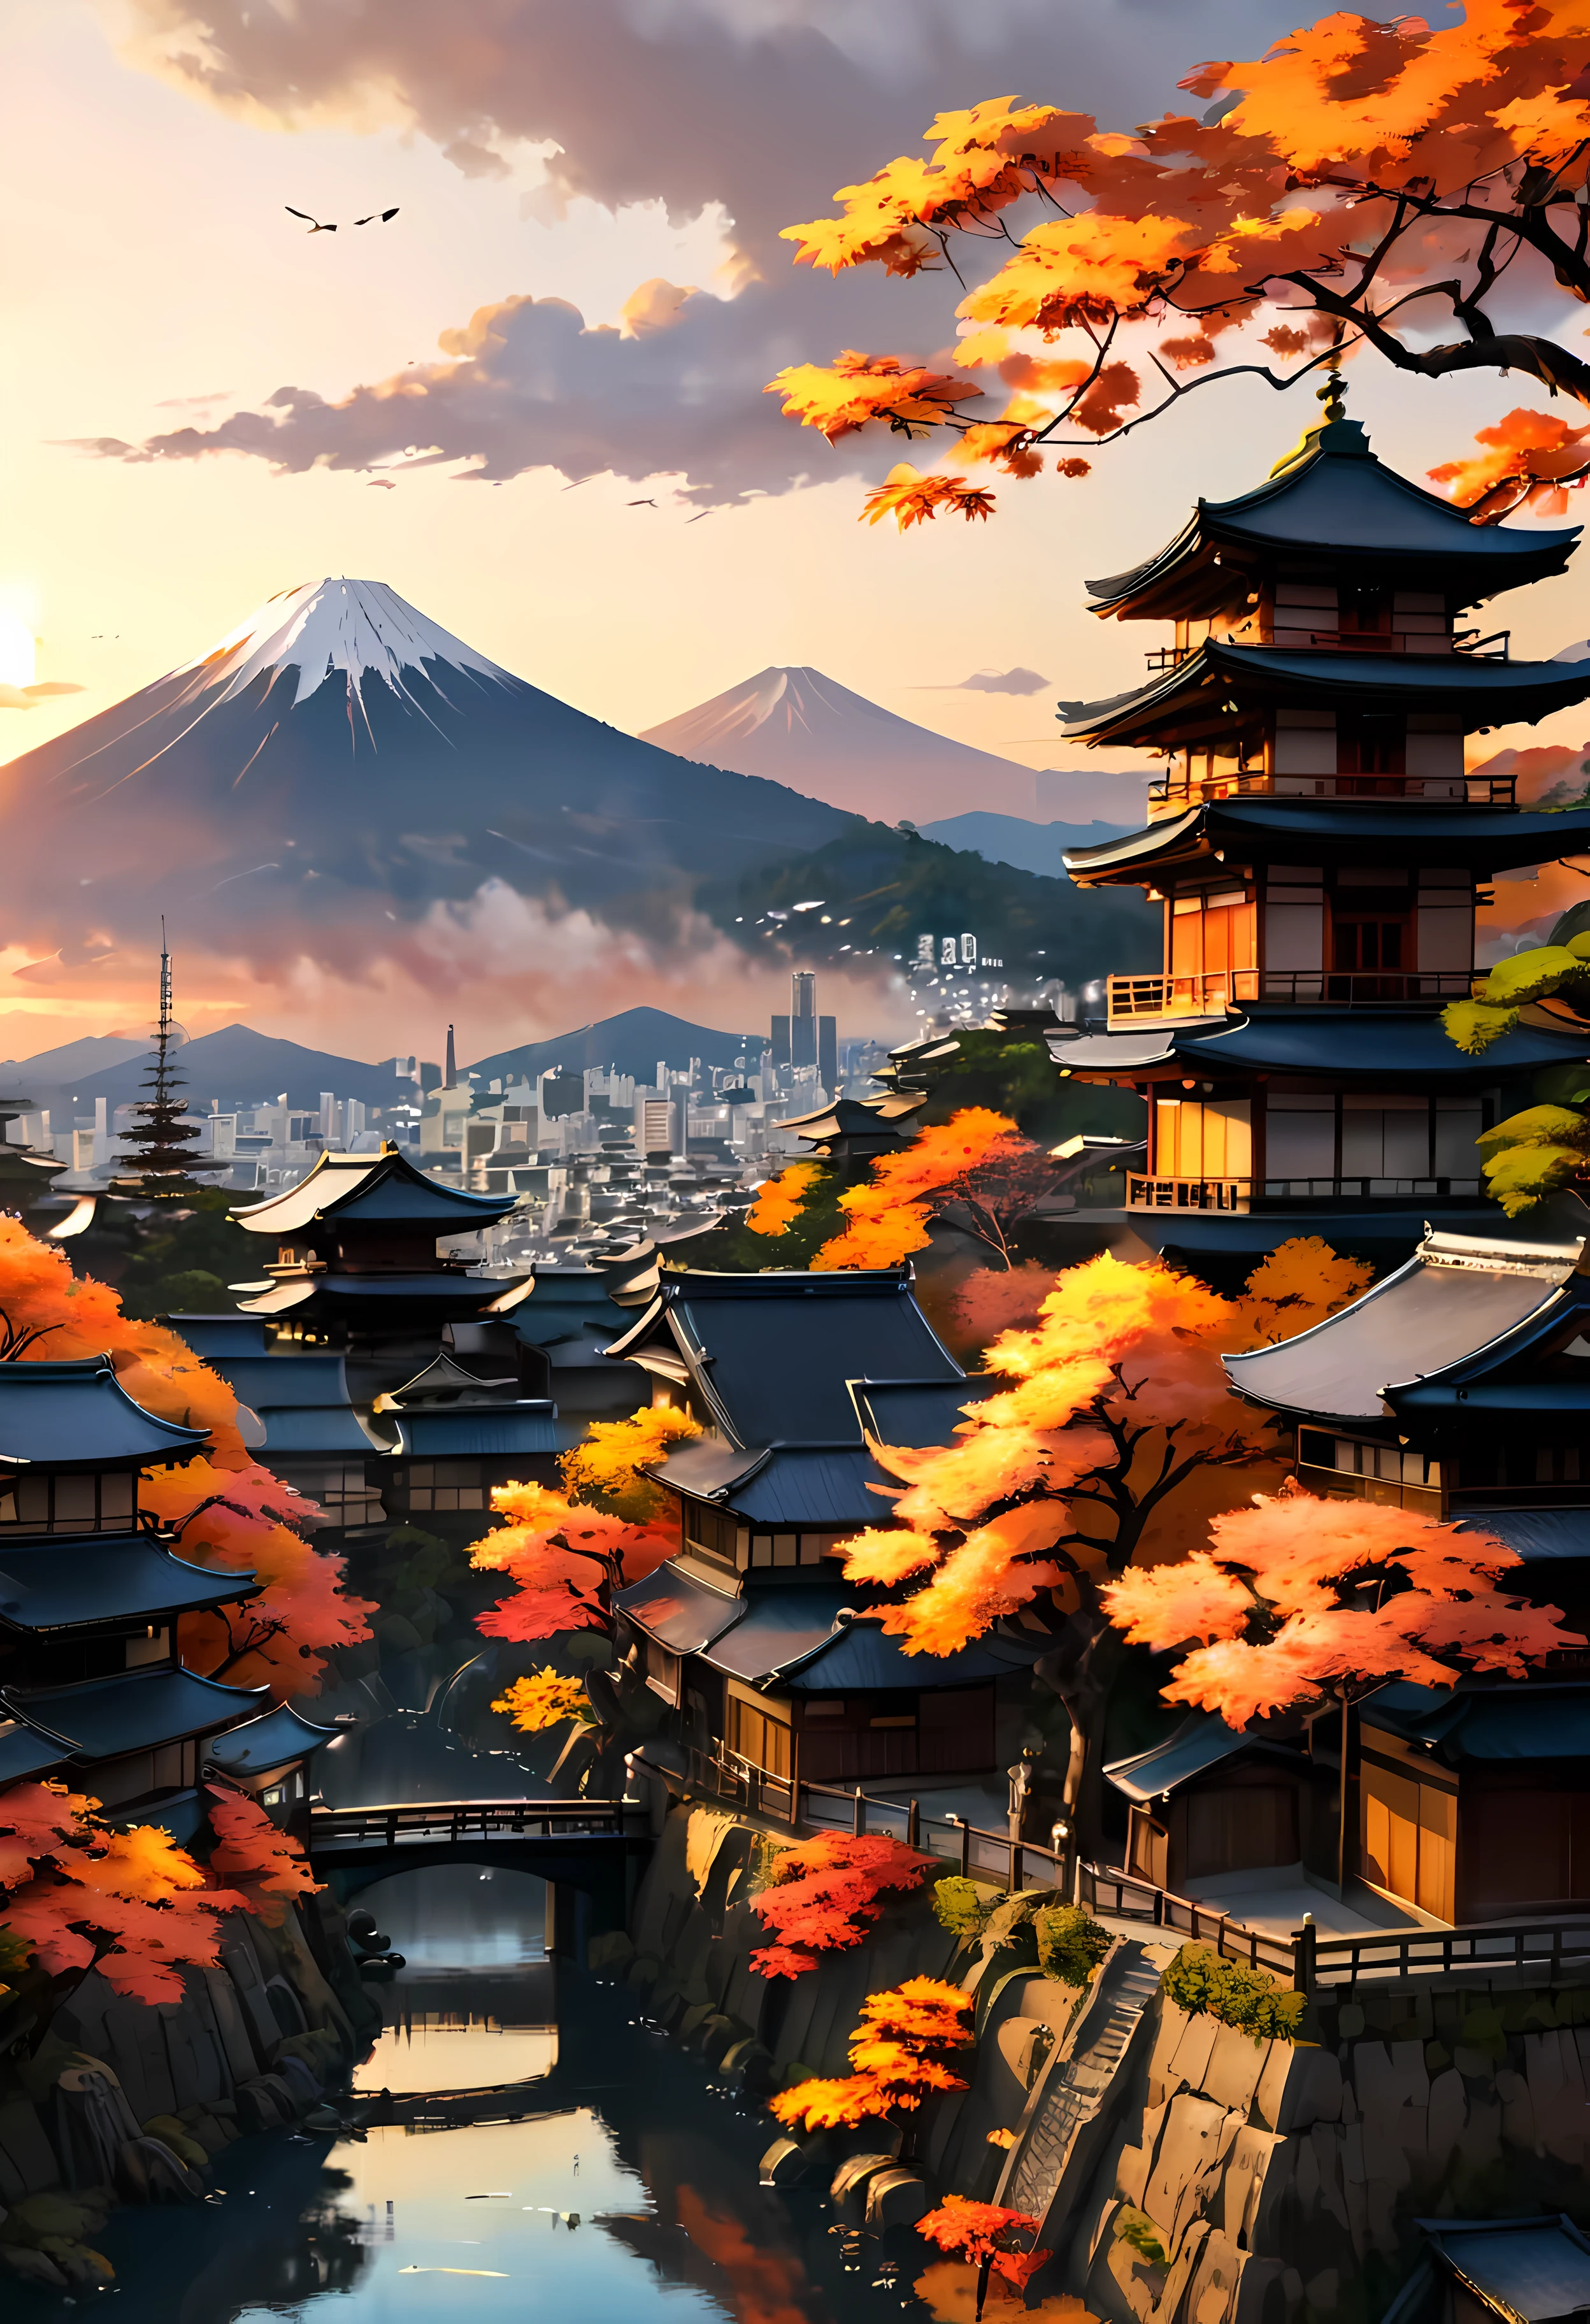 Red Fall Tree en la terraza del parque domina la antigua ciudad de Kioto con vistas a la montaña, fascinante paisaje de la antigua ciudad bañado por la luz del atardecer,((hora dorada):1.2),((Ciudad antigua japonesa):1.2),((Cielo del atardecer en otoño):1.1),delicada luz de la hora dorada, fondos de pantalla increíbles, Hermosos alrededores, pintura mate optimista, hermosa obra de arte digital, Ciudad antigua japonesa background, Escenas hermosas y detalladas., UHD subterráneo, paisaje UHD, Arte conceptual majestuoso, hermosa ciudad antigua. |(Obra maestra en resolución máxima de 16K), la mejor calidad, (calidad de fondo de pantalla CG unity 16k muy detallada),(Colores suaves Arte digital muy detallado de 16k),súper detallado. | imagen perfecta,16k UE5,Pintura oficial, Extrafino, profundidad de campo, no contrast, enfoque limpio y nítido, profesional, sin desenfoque. | (((Mas detalle))).